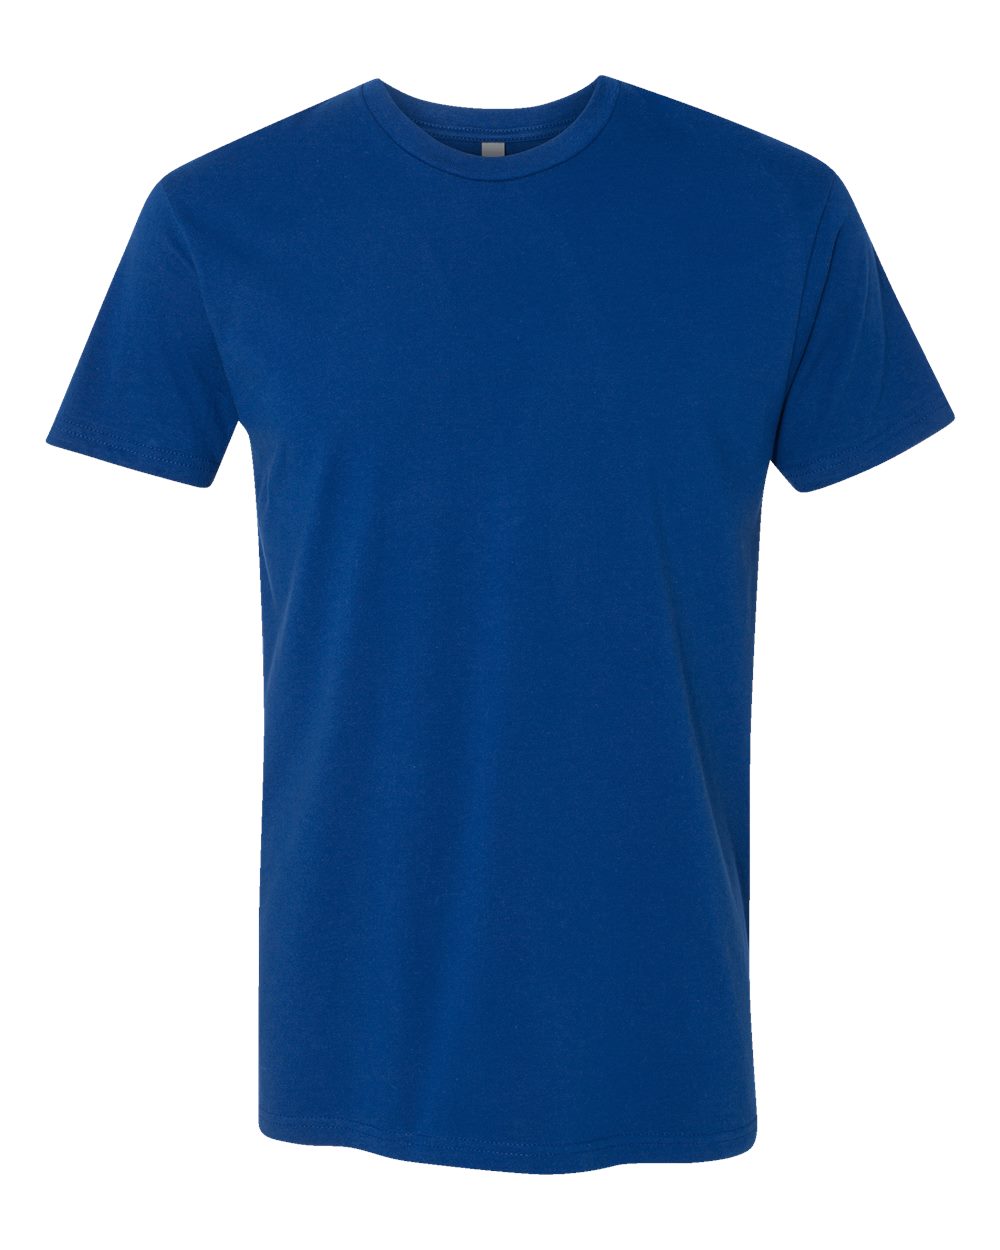 Next Level 3600 Unisex Cotton T Shirt - Royal - XL